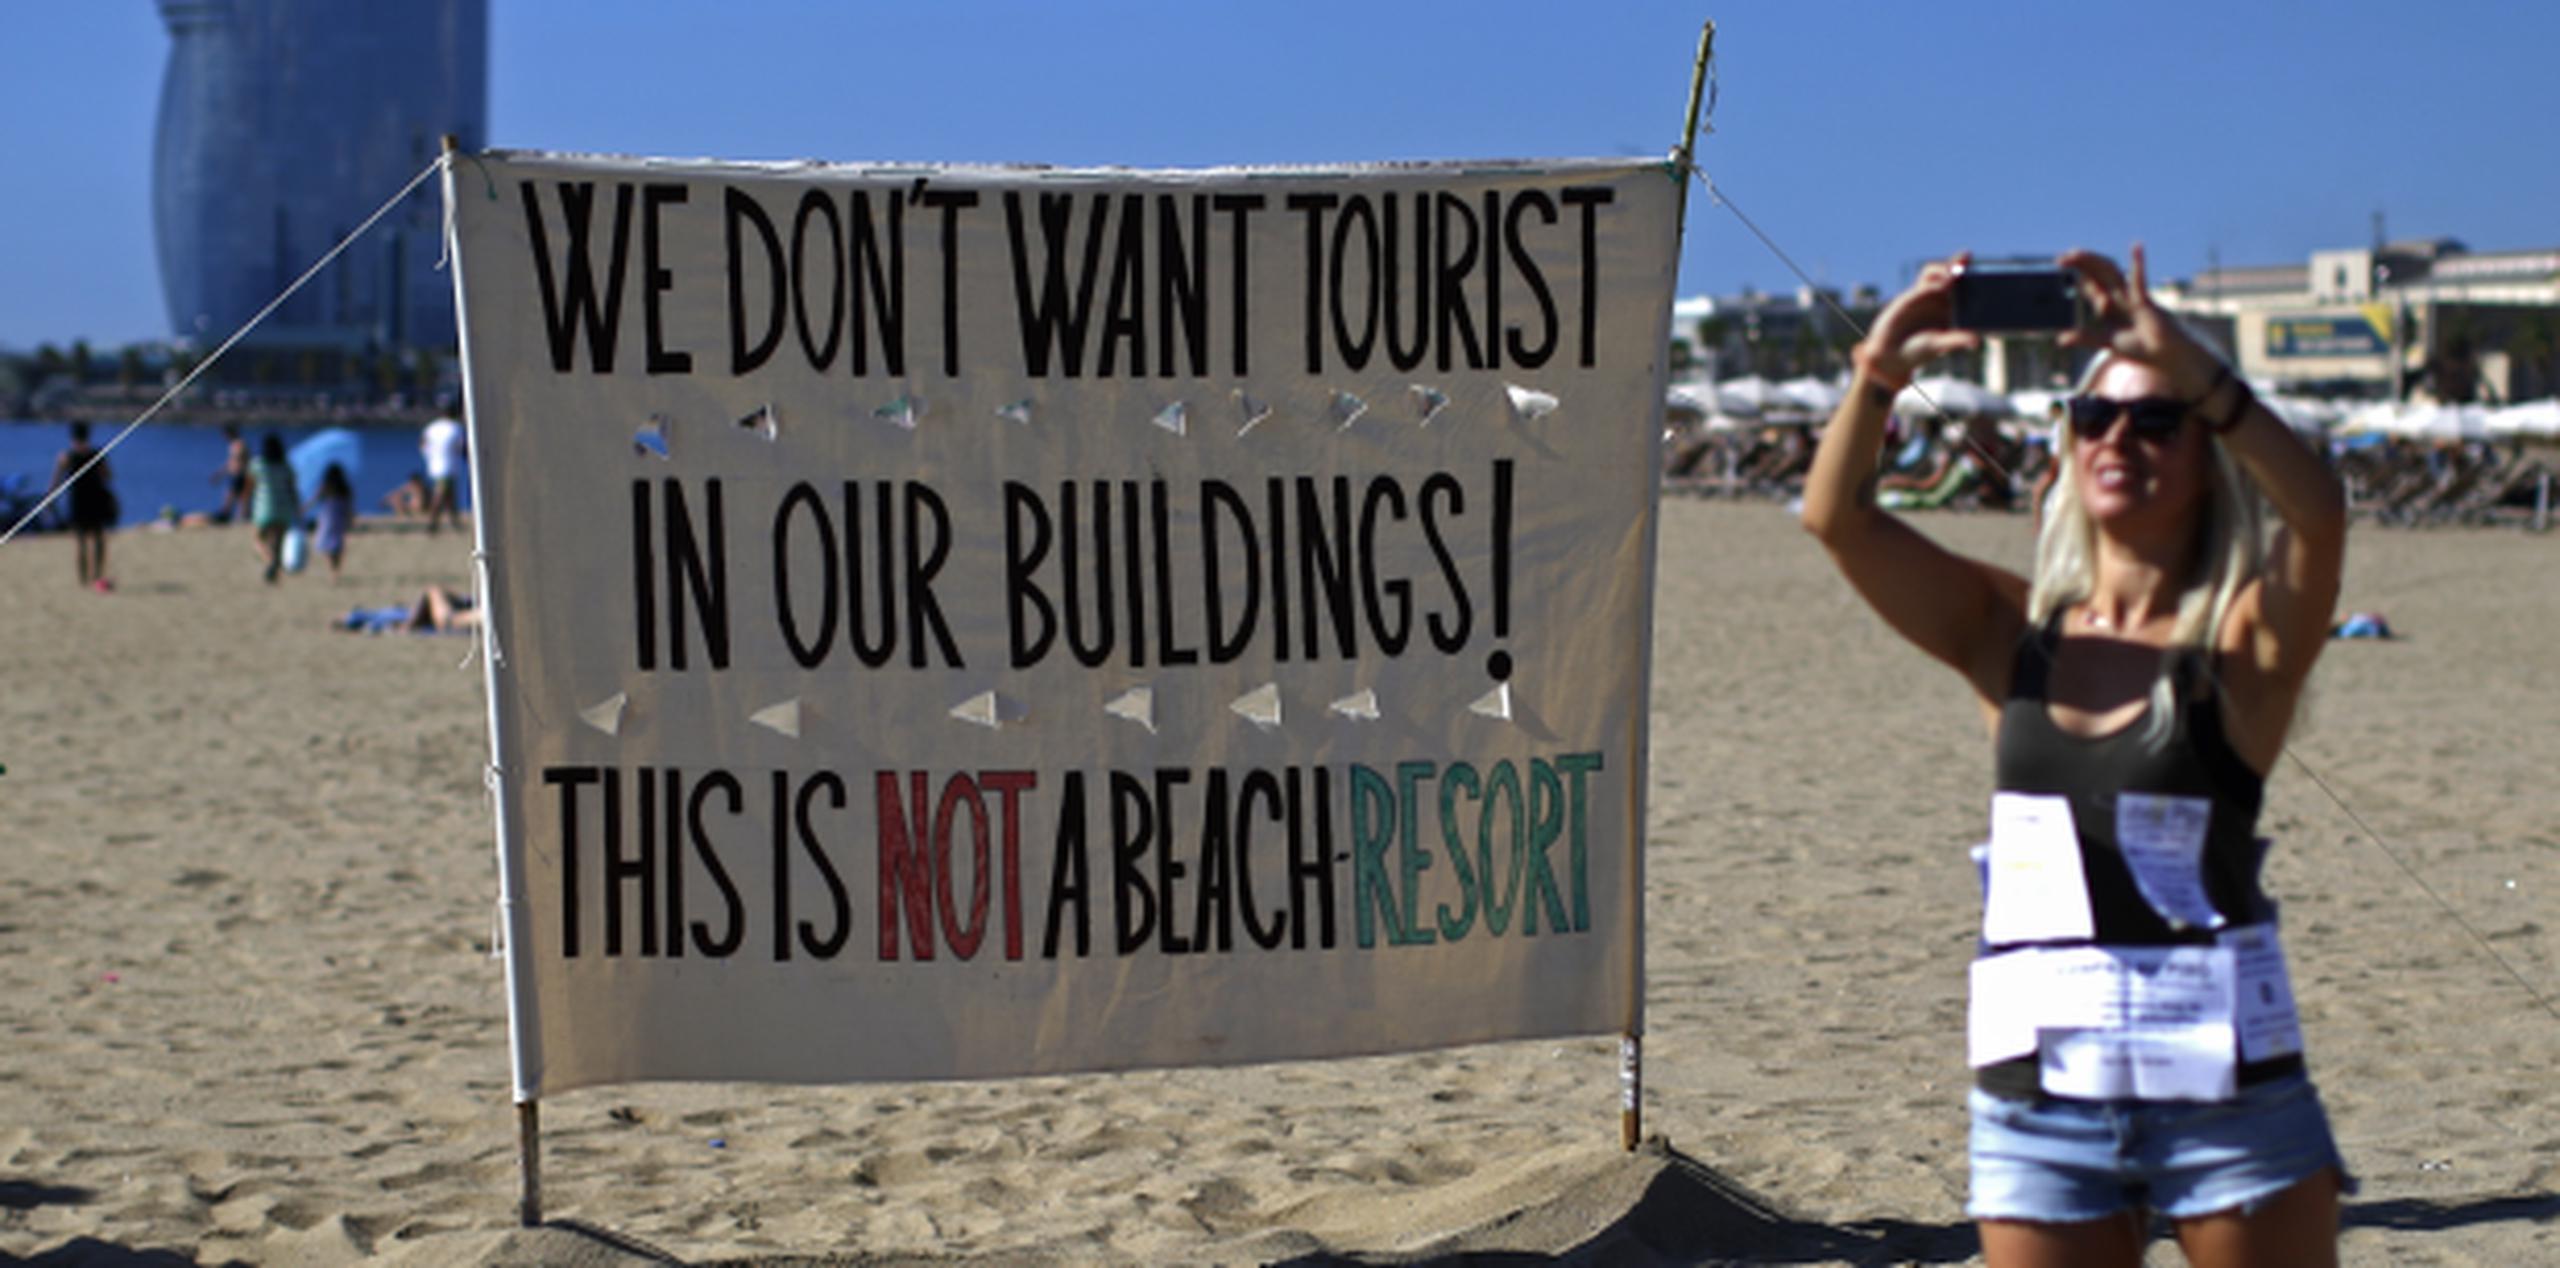 "No queremos turistas en nuestros edificios. Esto no es un complejo de playa", lee el letrero. (AP / Manu Fernández)